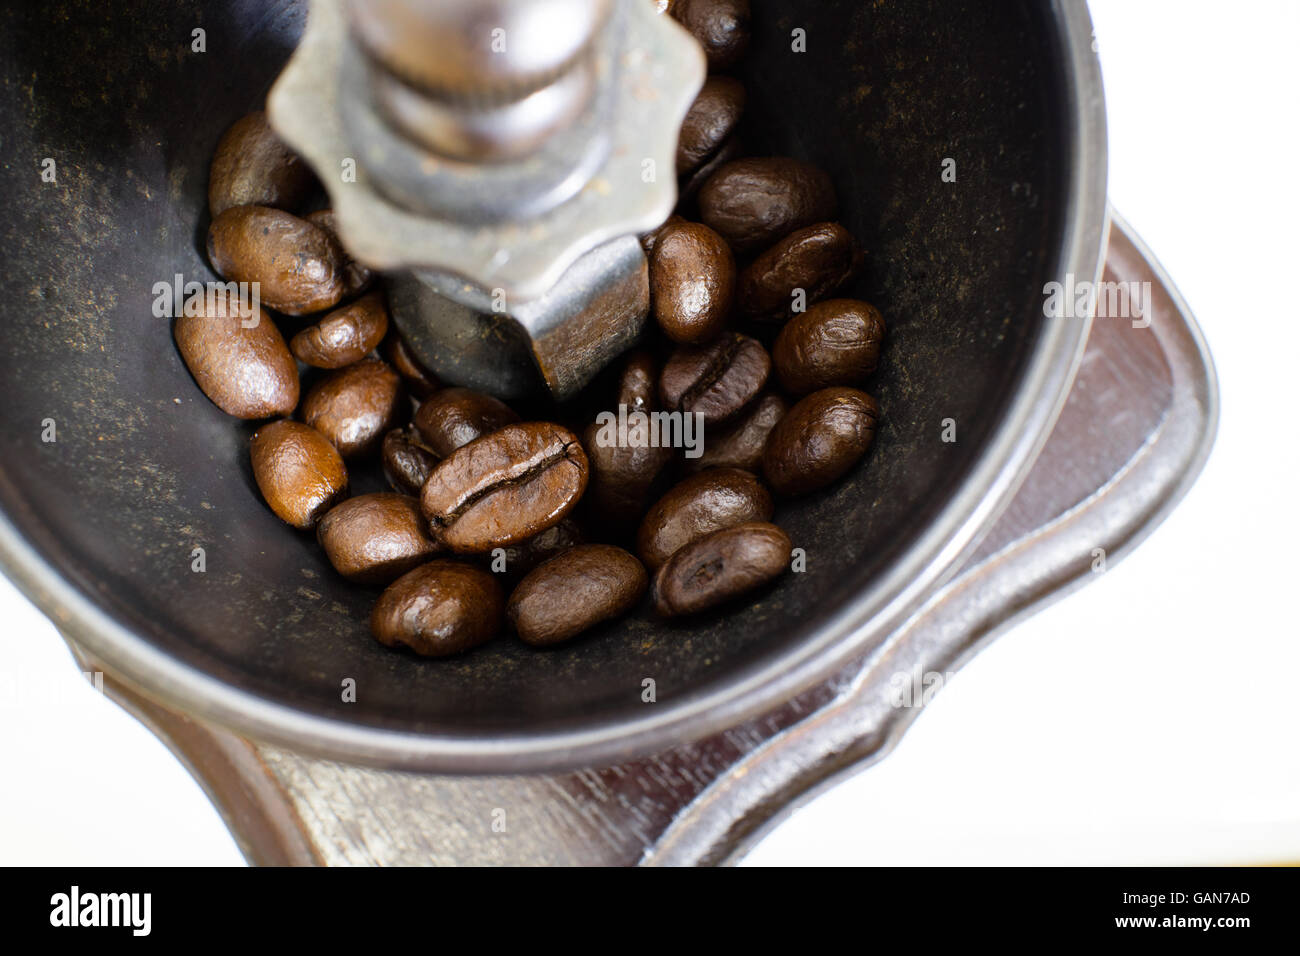 Mulino a mano vecchio stile con chicchi di caffè. Foto Stock